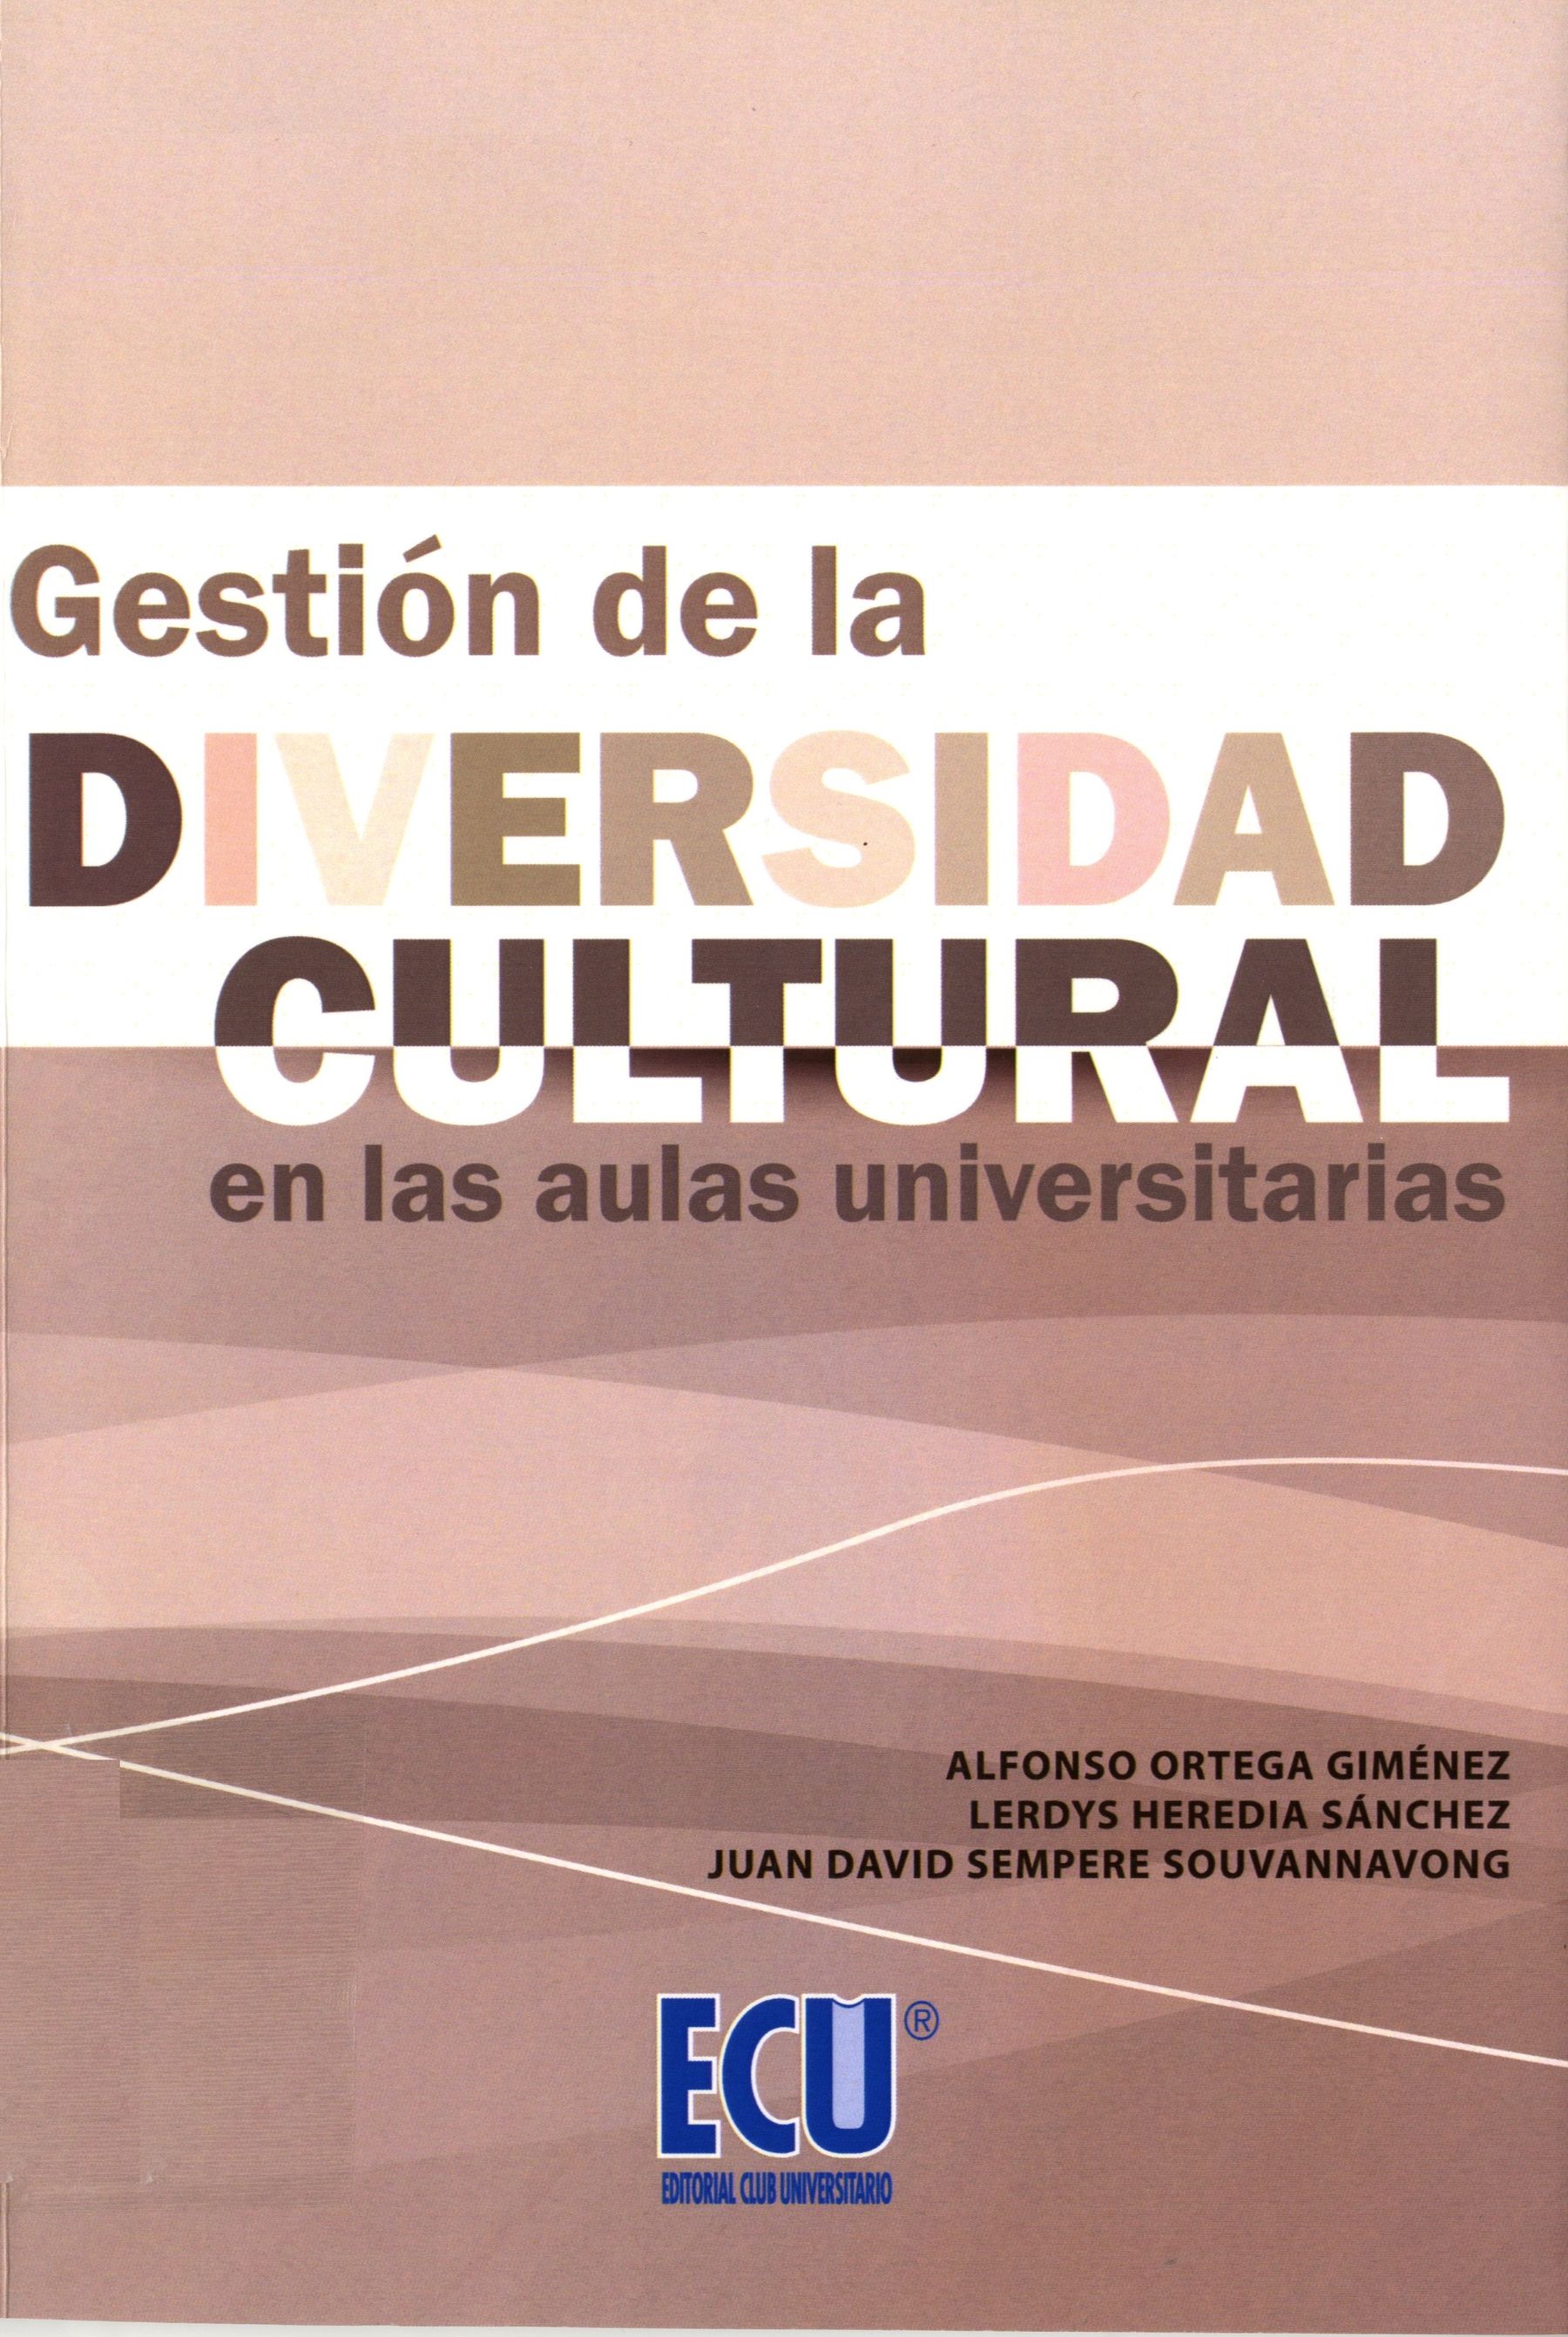 Imagen de portada del libro Gestión de la diversidad cultural en las aulas universitarias